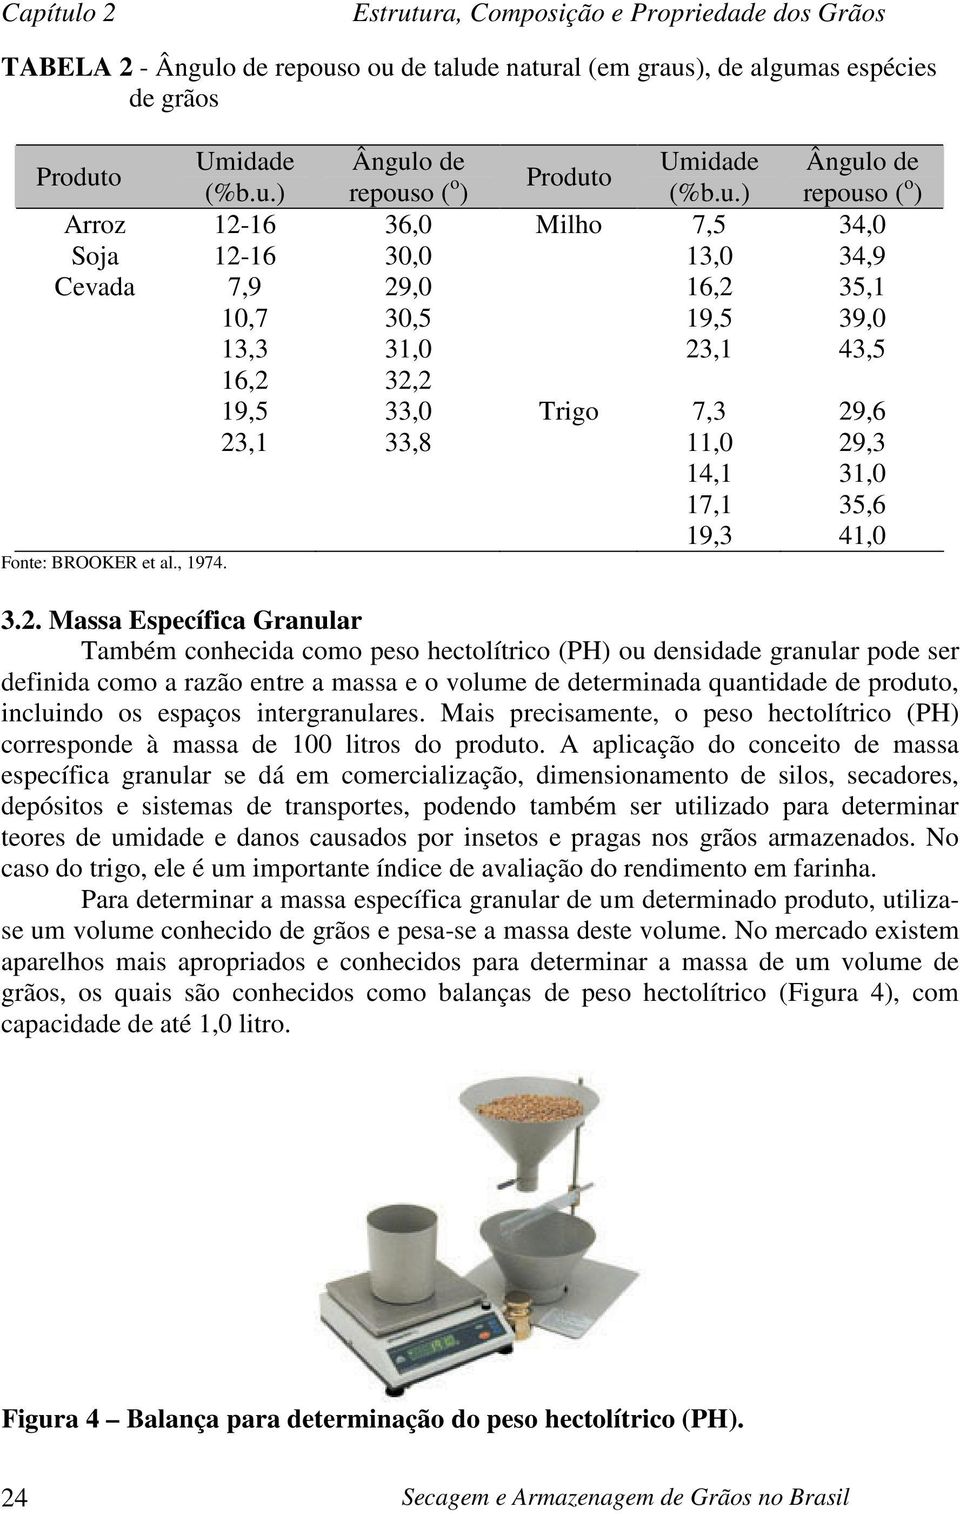 o ou de talude natural (em graus), de algumas espécies de grãos Produto Umidade Ângulo de Umidade Ângulo de (%b.u.) repouso ( o Produto ) (%b.u.) repouso ( o ) Arroz 12-16 36,0 Milho 7,5 34,0 Soja